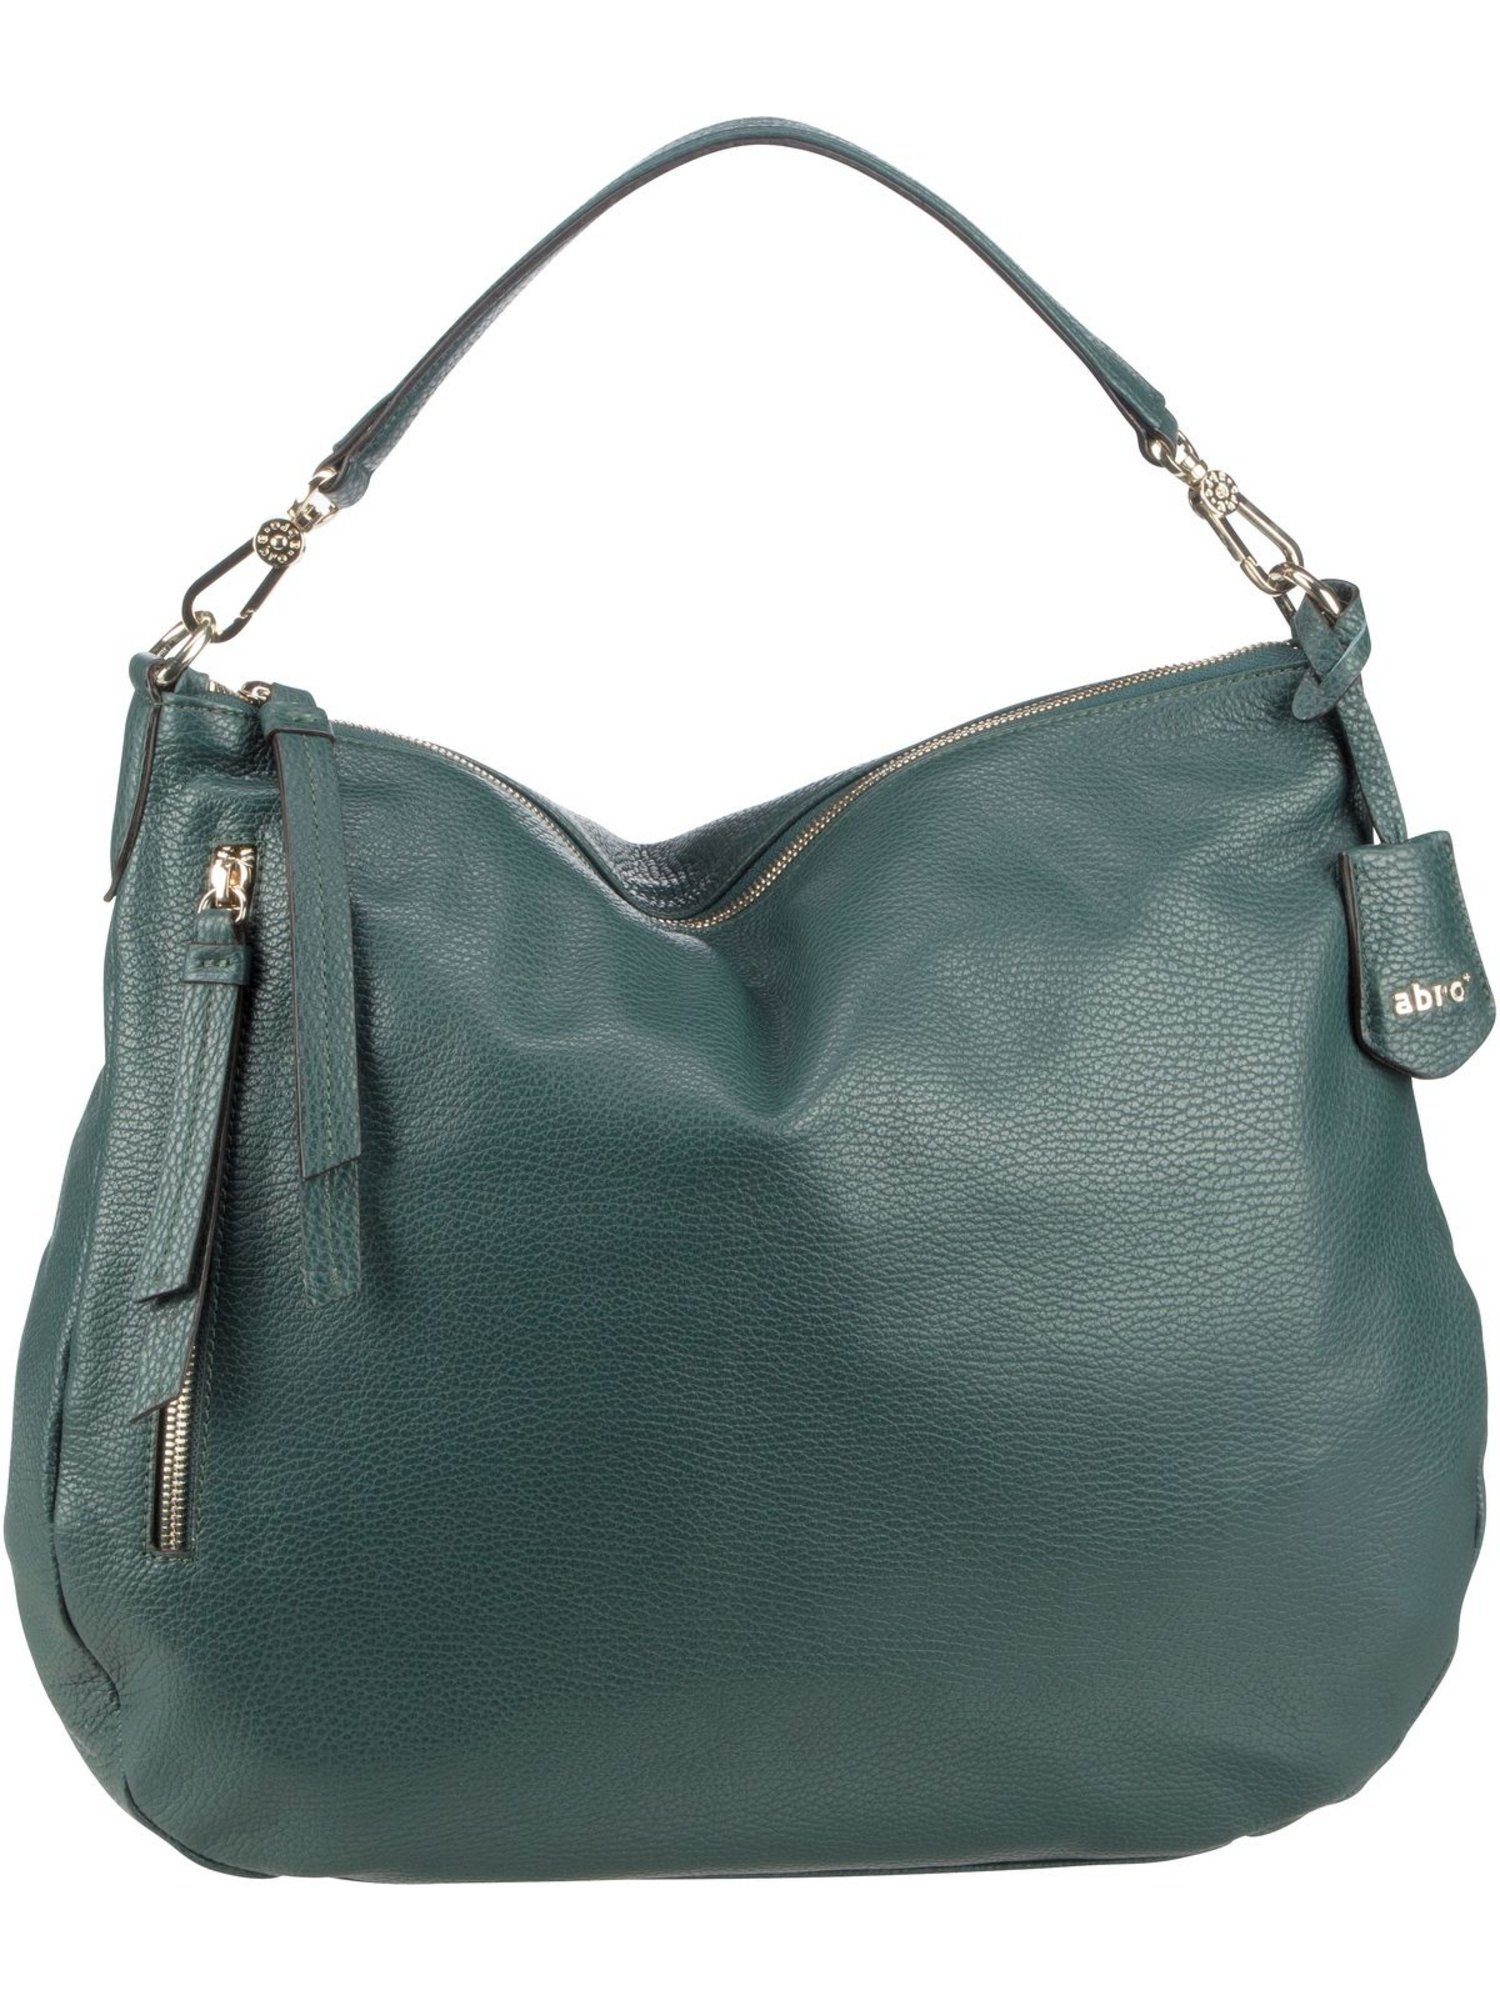 Abro Handtasche »Juna 28826«, Beuteltasche / Hobo Bag online kaufen | OTTO